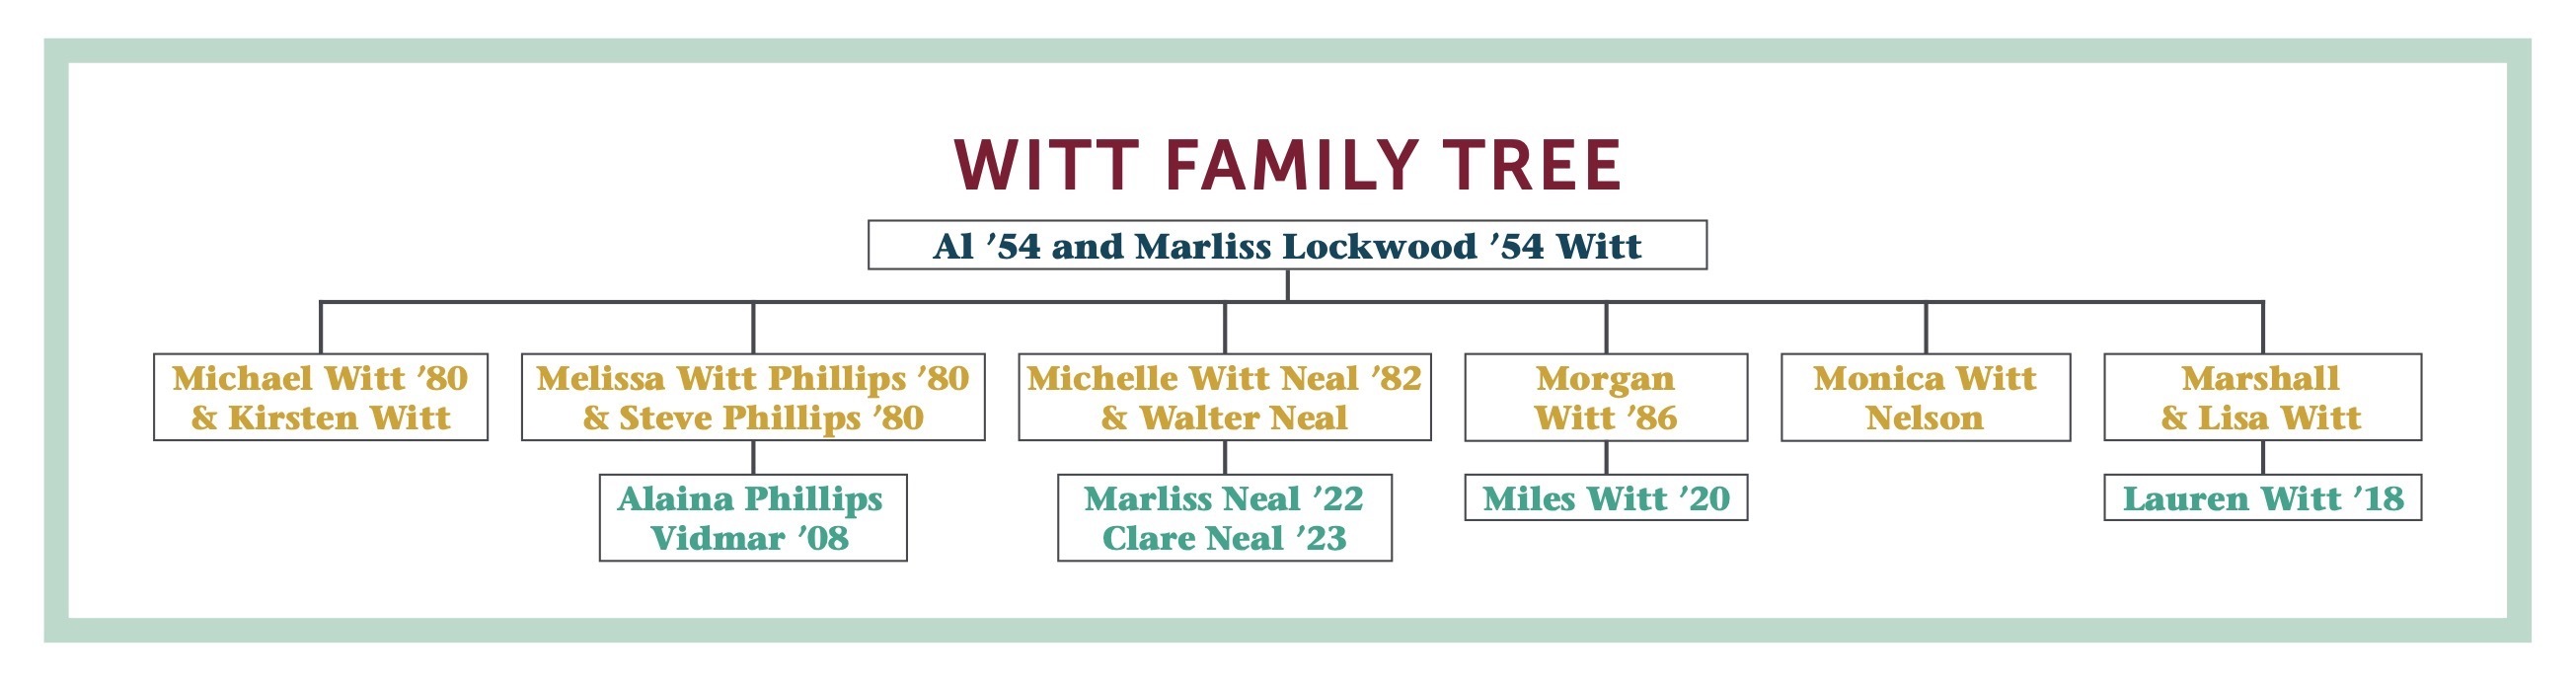 Witt Family Tree - It's My Westmont Now